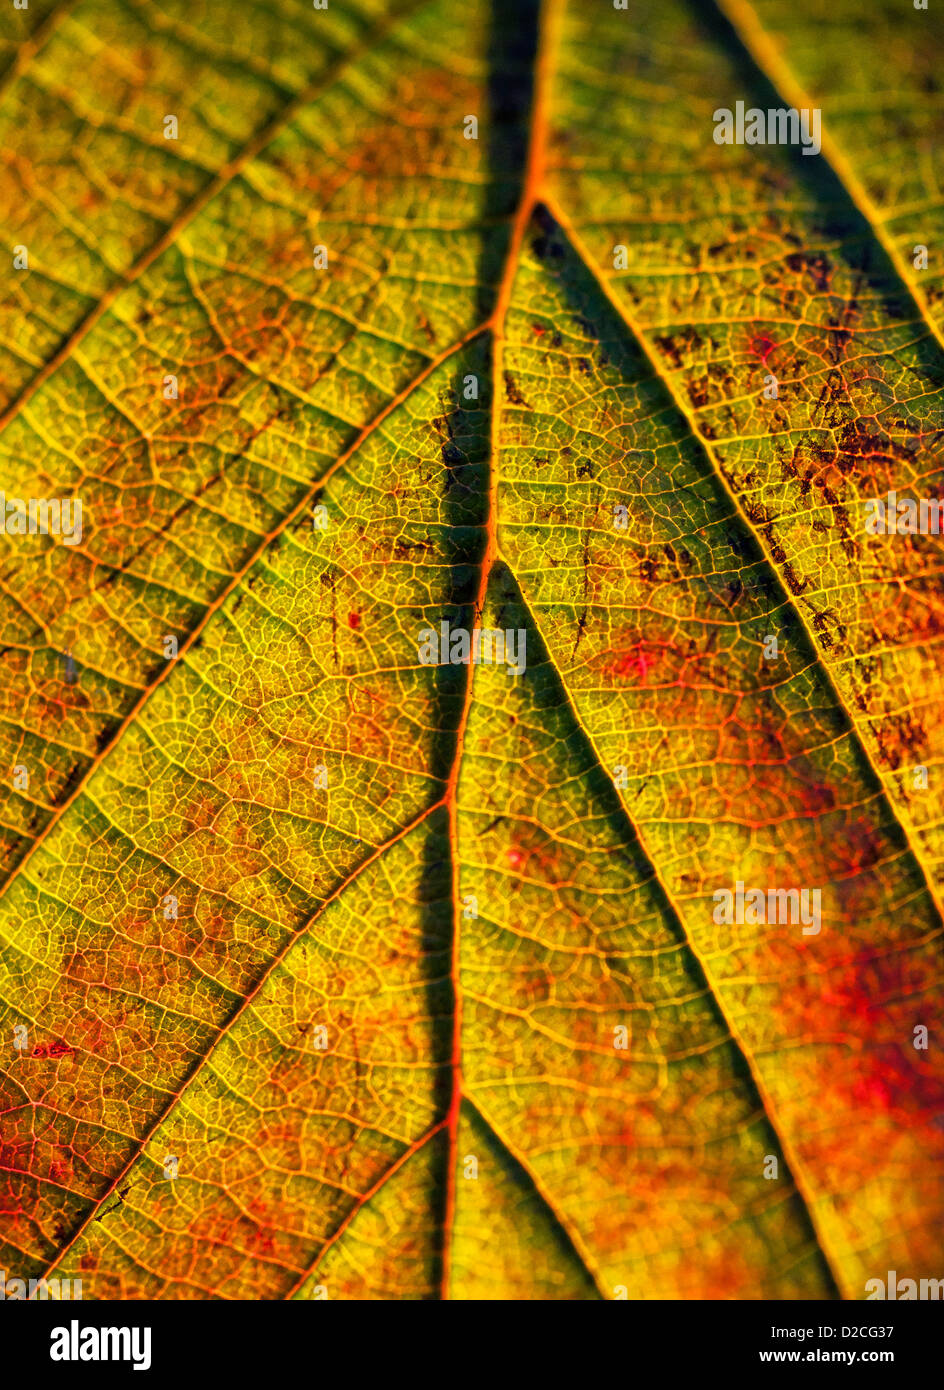 Macro detail of an autumn leaf. Stock Photo